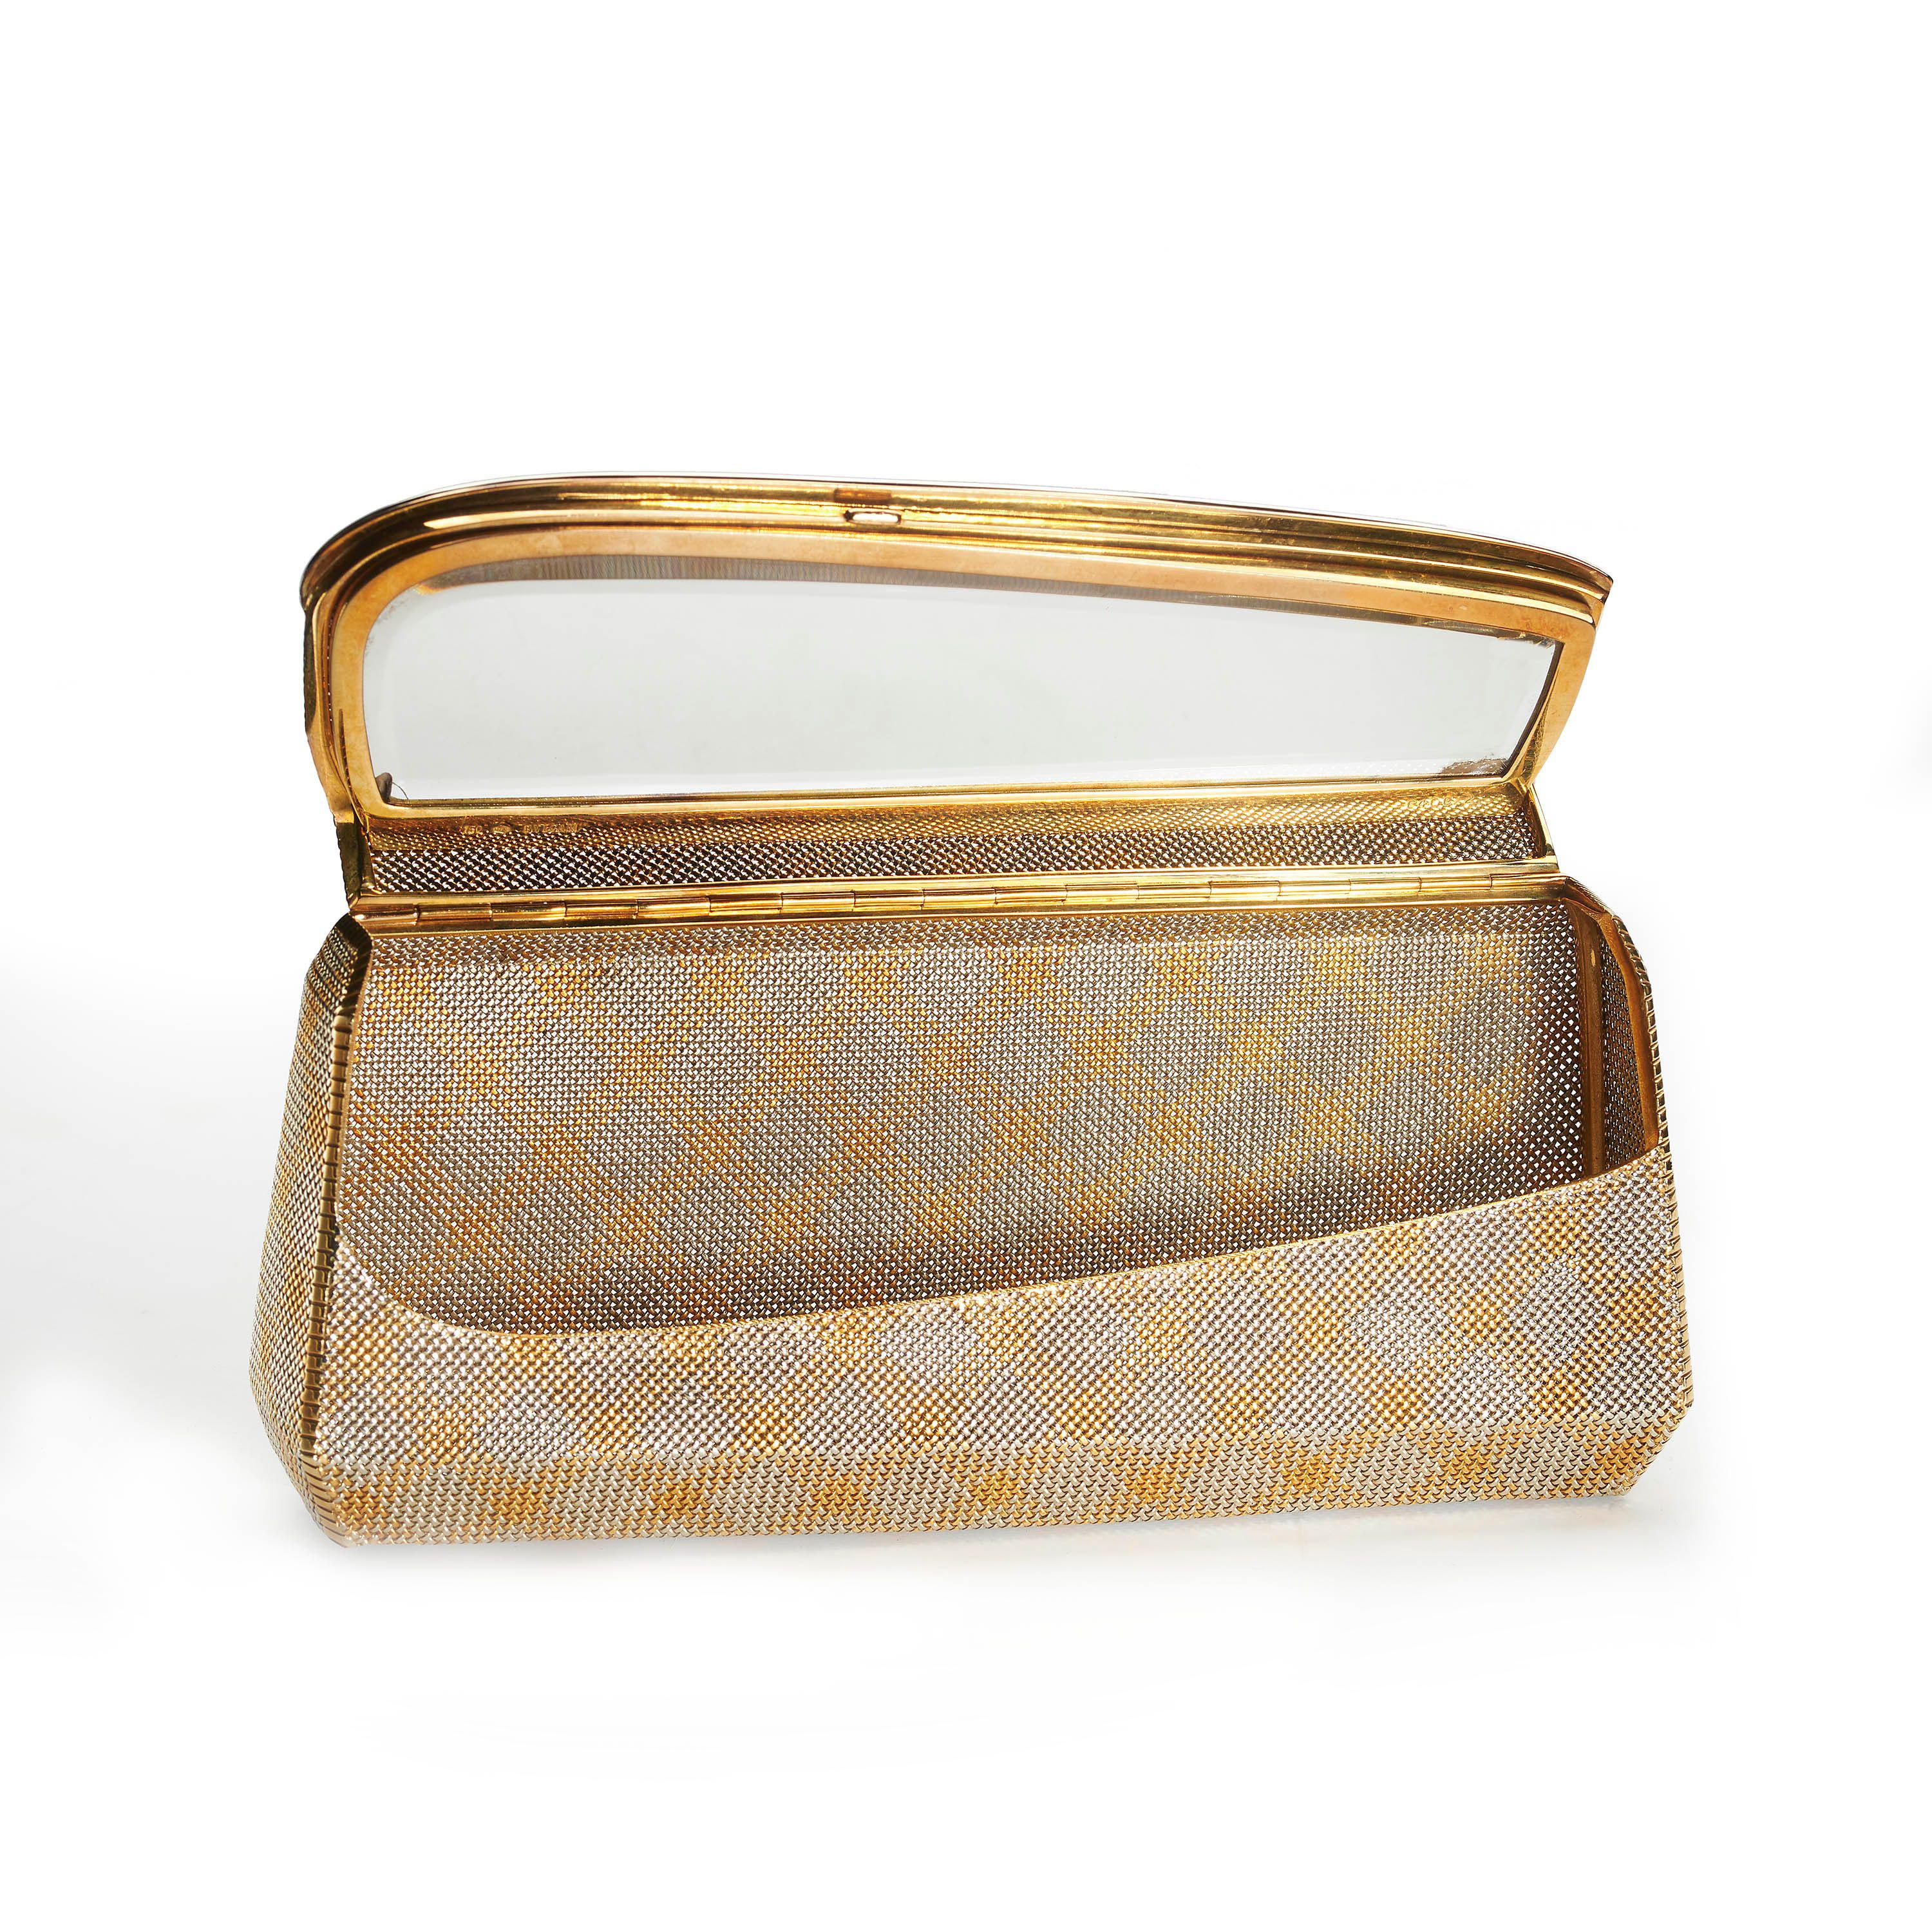 Vintage-Tasche aus Weiß- und Gelbgold von Bulgari, mit Kreuzmustern aus Gelbgold auf weißem Gold, aus gewebtem 18-karätigem Gold, mit einem Spiegel im Deckel, signiert BVLGARI, mit Feingehaltsmarke 750, italienische Marke 678AL, nummeriert 6466/2,